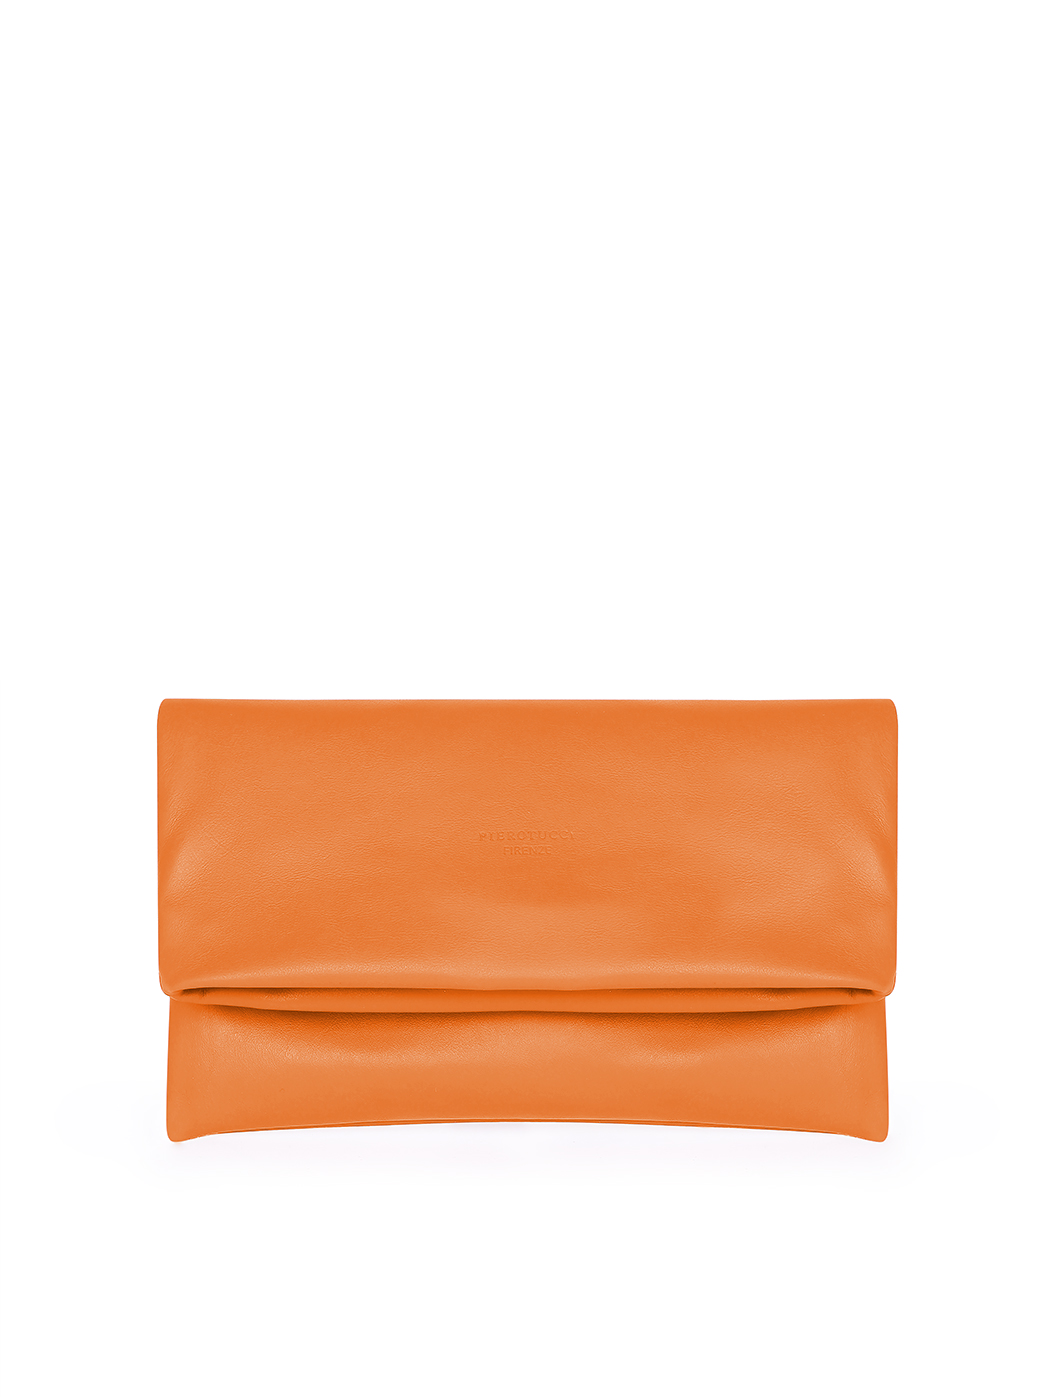 Кожаный клатч из натуральной кожи  оранжевого цвета